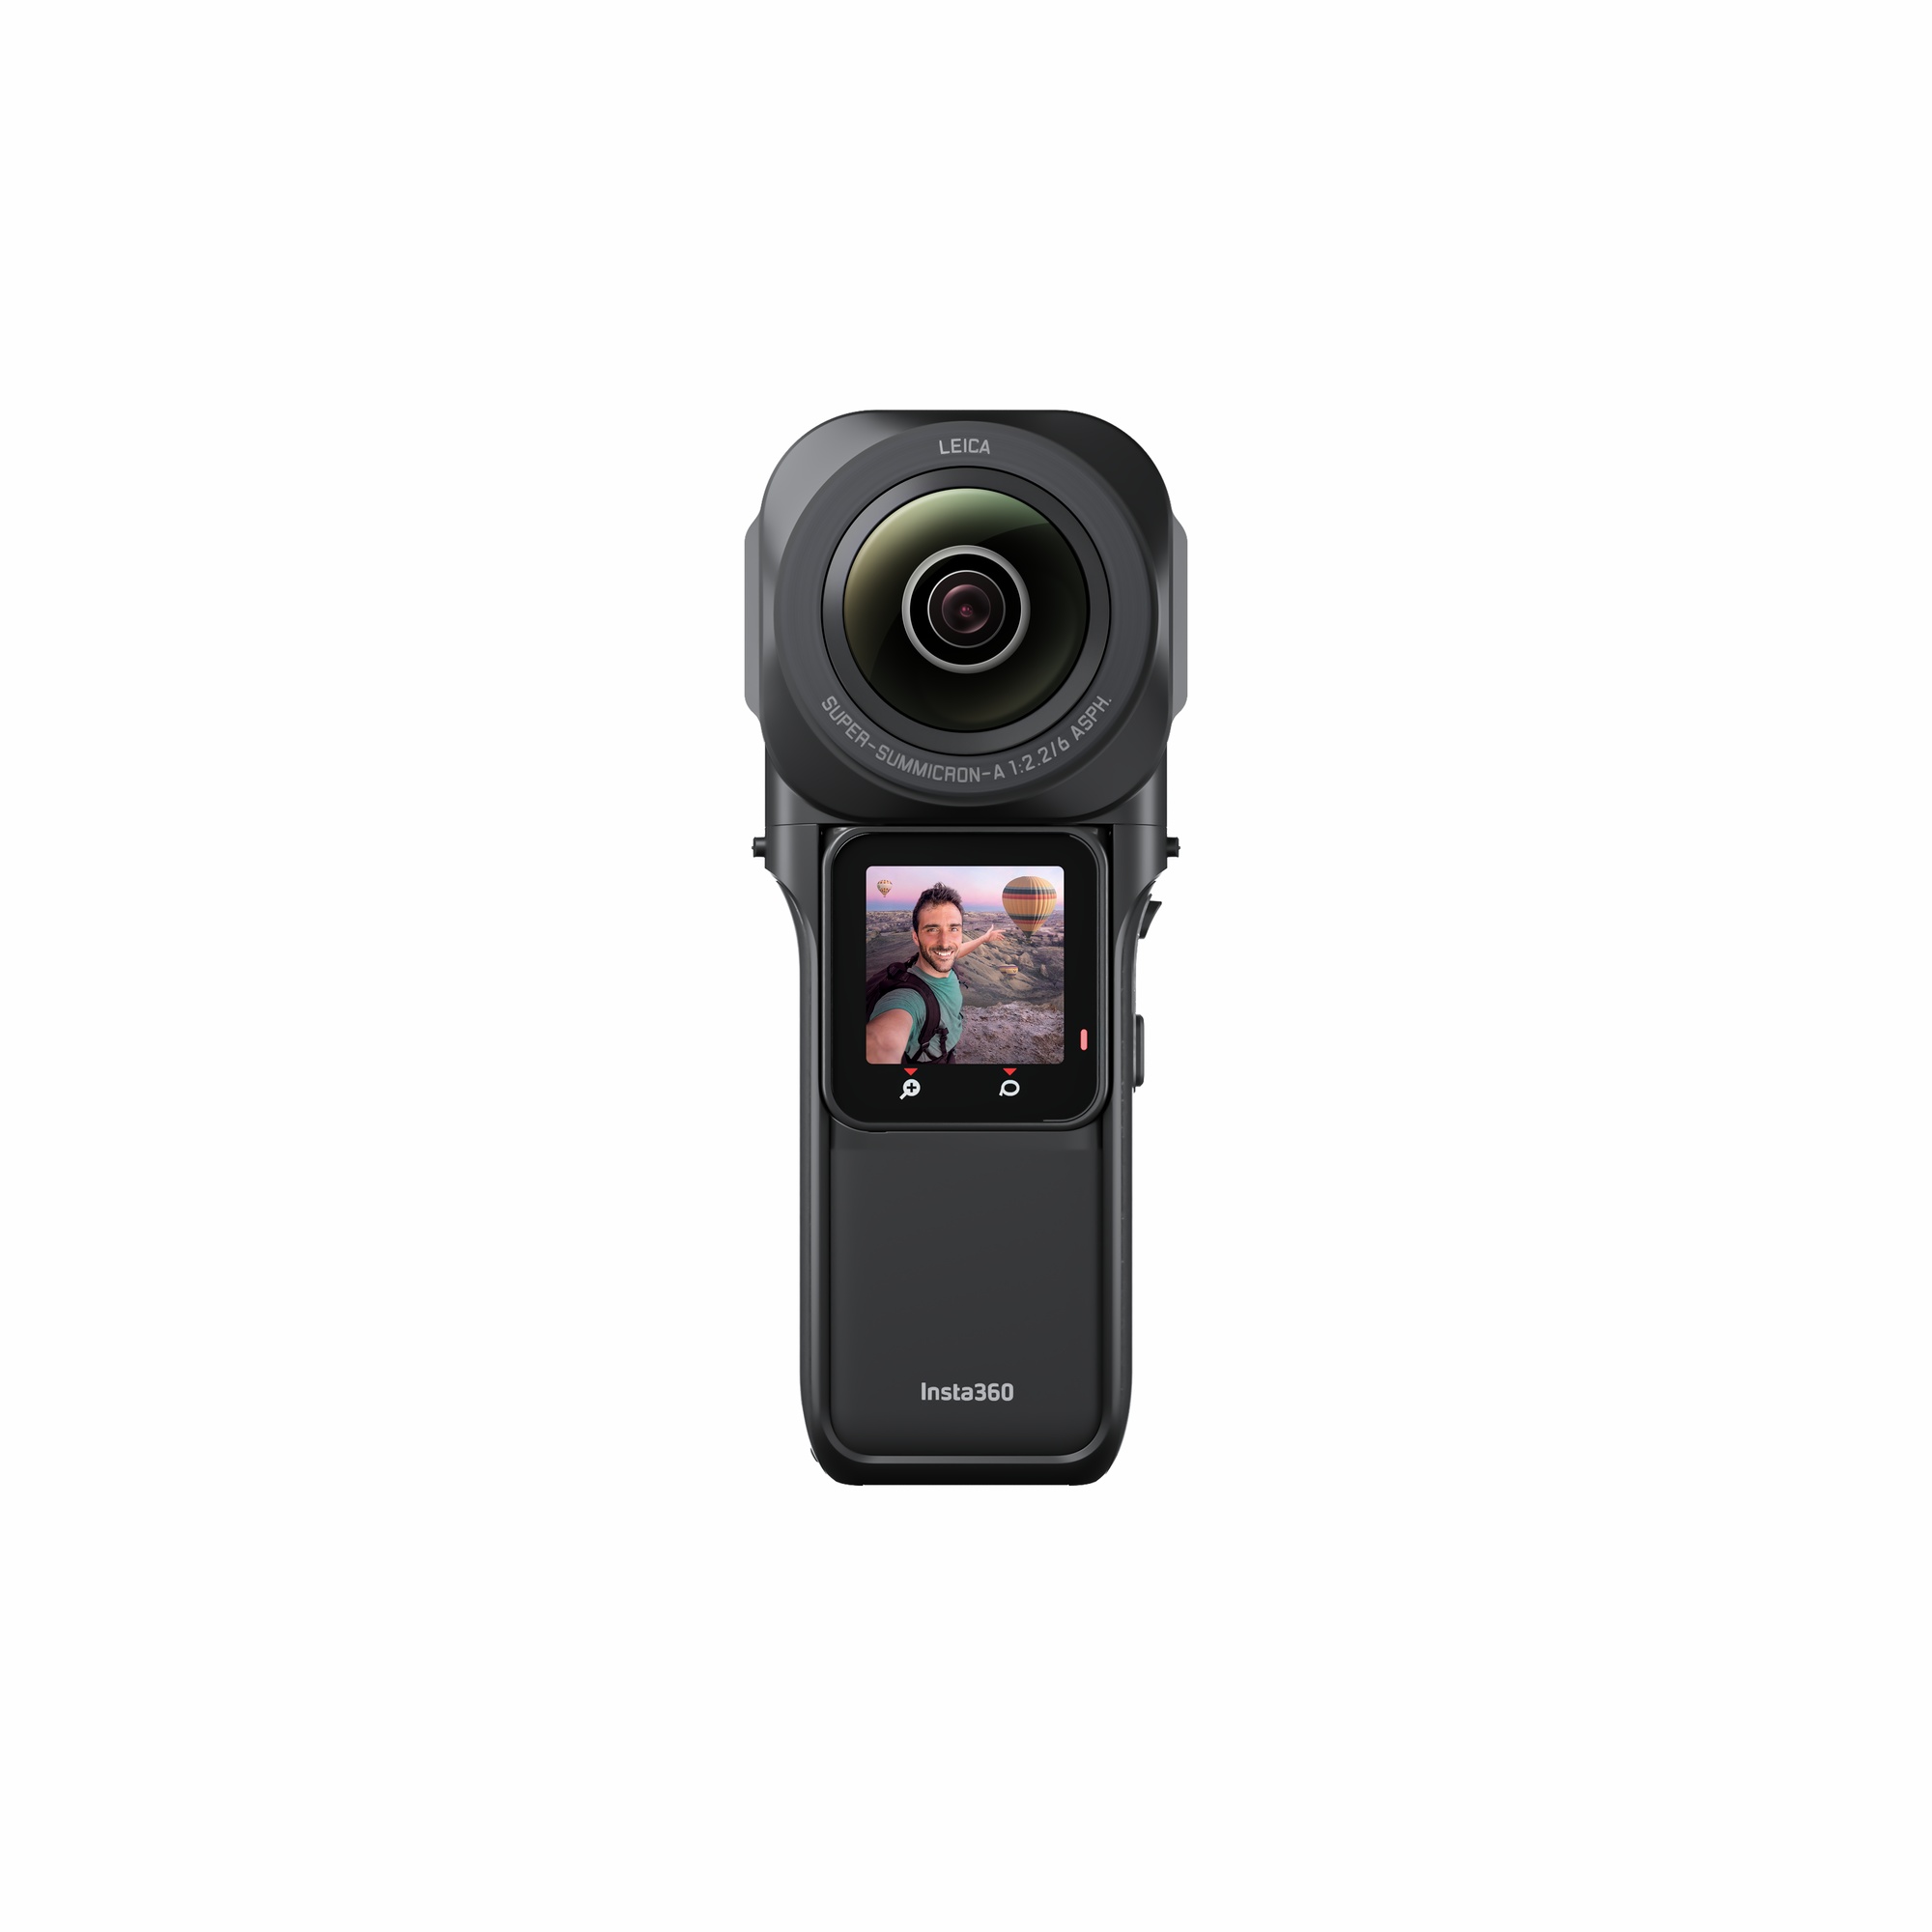 アスク、Insta360ブランド製の小型アクションカメラ「Insta360 ONE RS 1-Inch 360 Edition」を発表